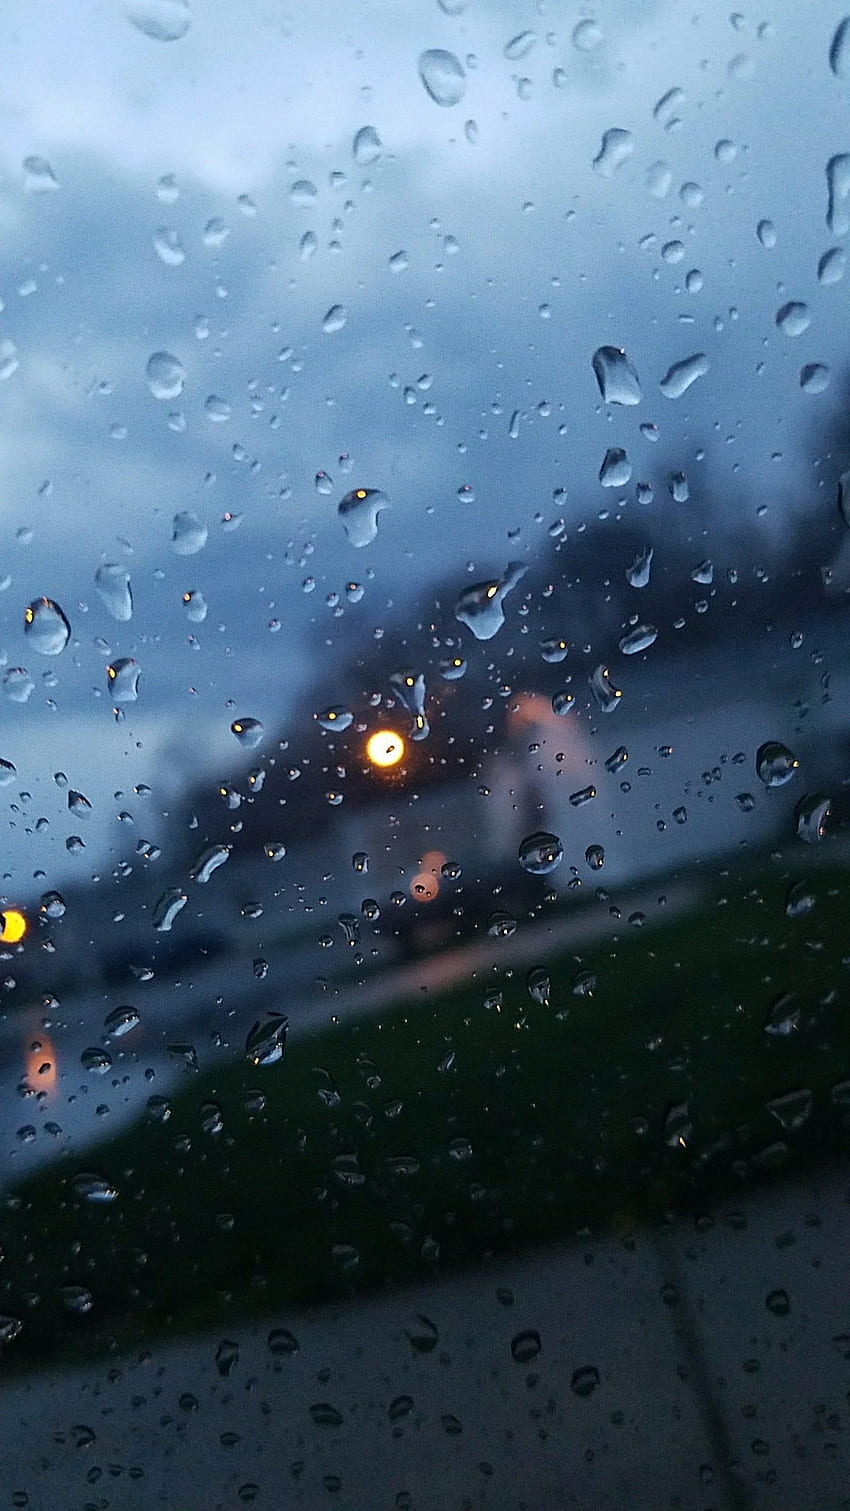 Uno scatto che ho scattato attraverso il finestrino del mio autista in una giornata piovosa. iPhone X - iPhone X, pioggia sulla finestra Sfondo del telefono HD